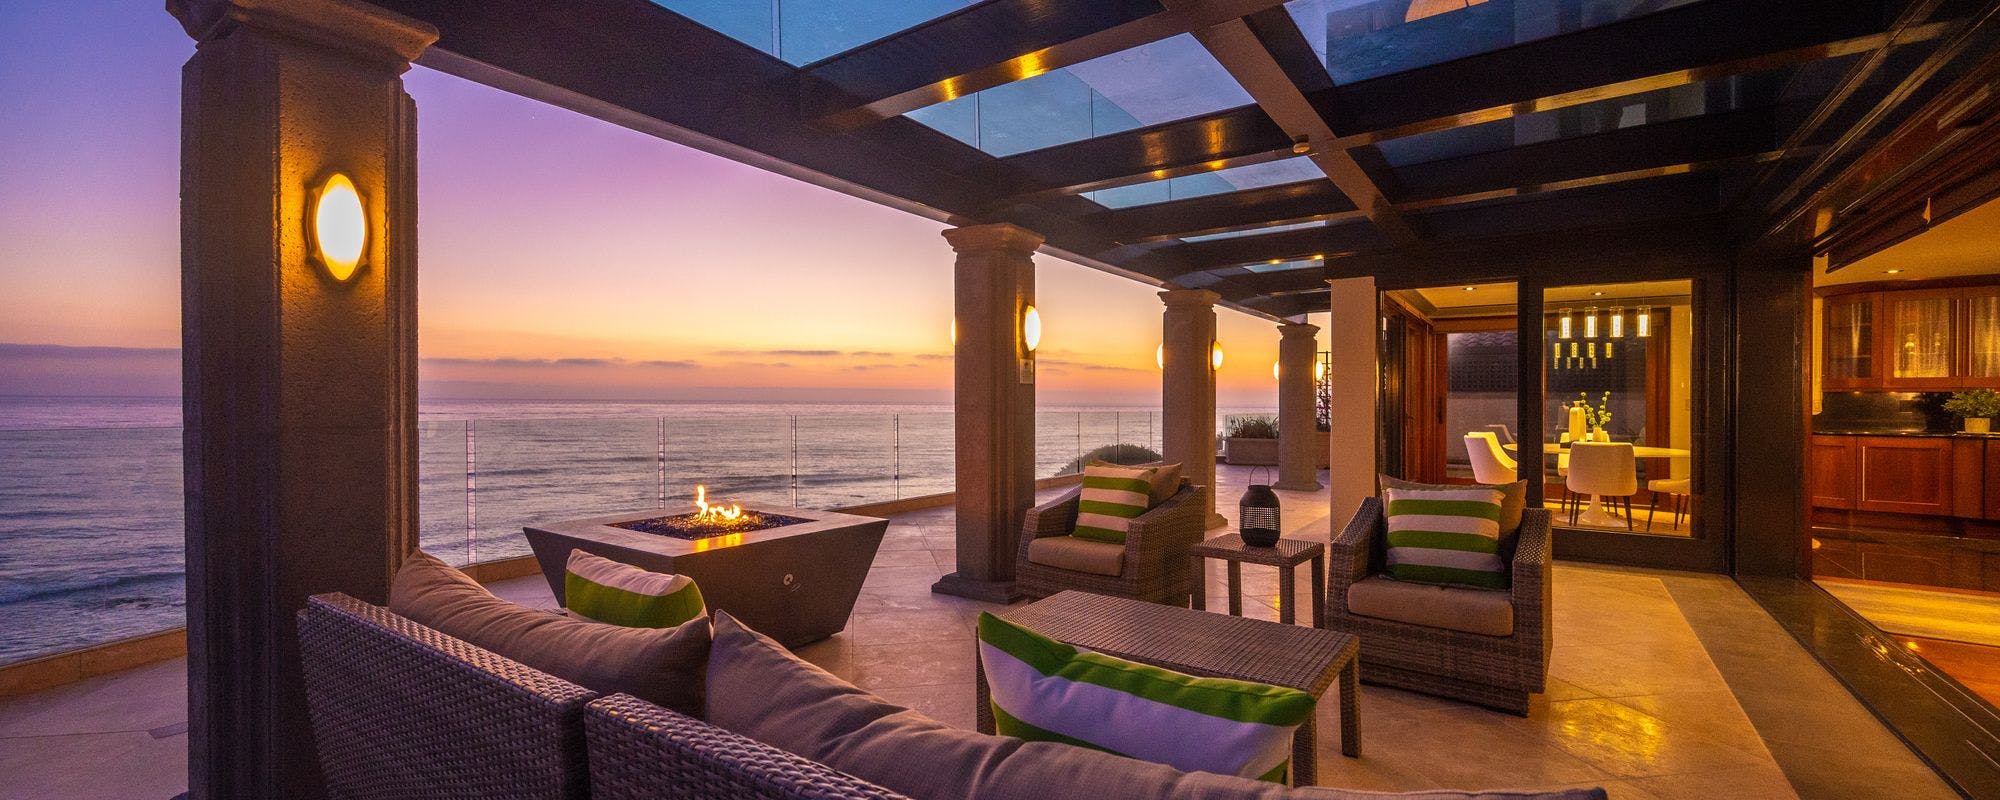 Indoor outdoor oceanfront living space